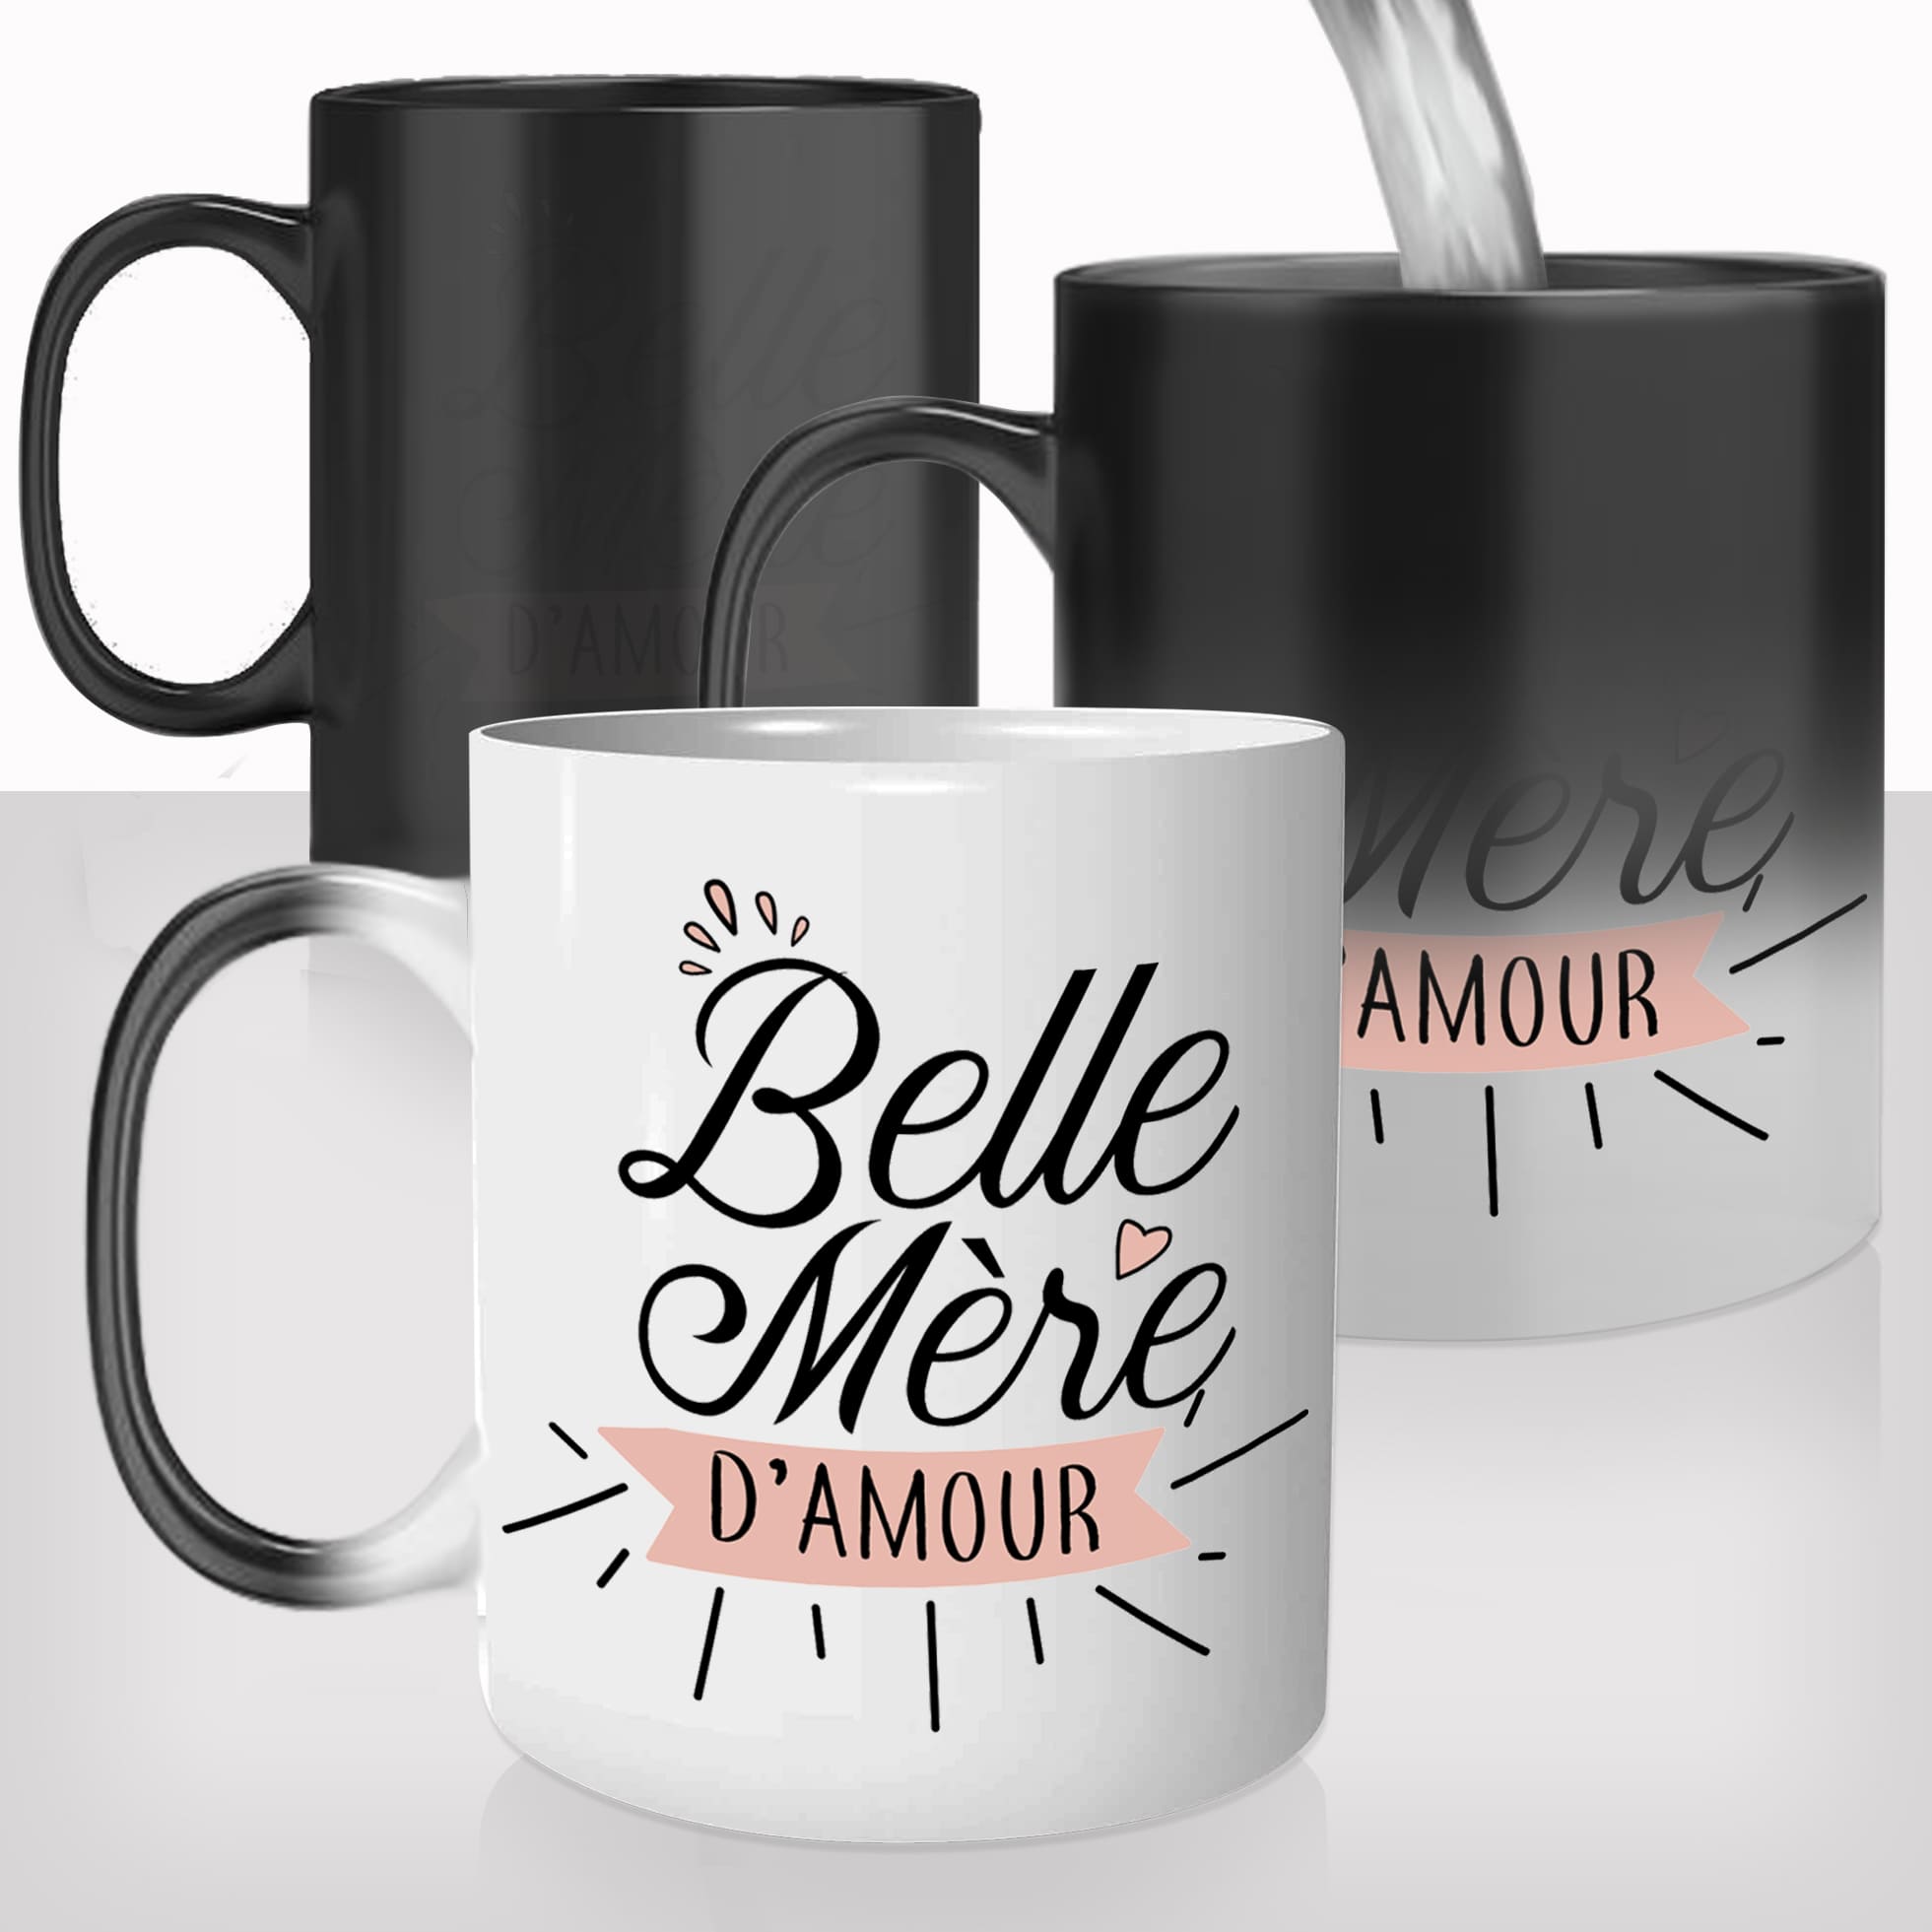 mug-magique-tasse-magic-thermoréactif-chauffant-personnalisé-belle-mère-damour-maman-photo-personnalisable-famille-cadeau-original-fun